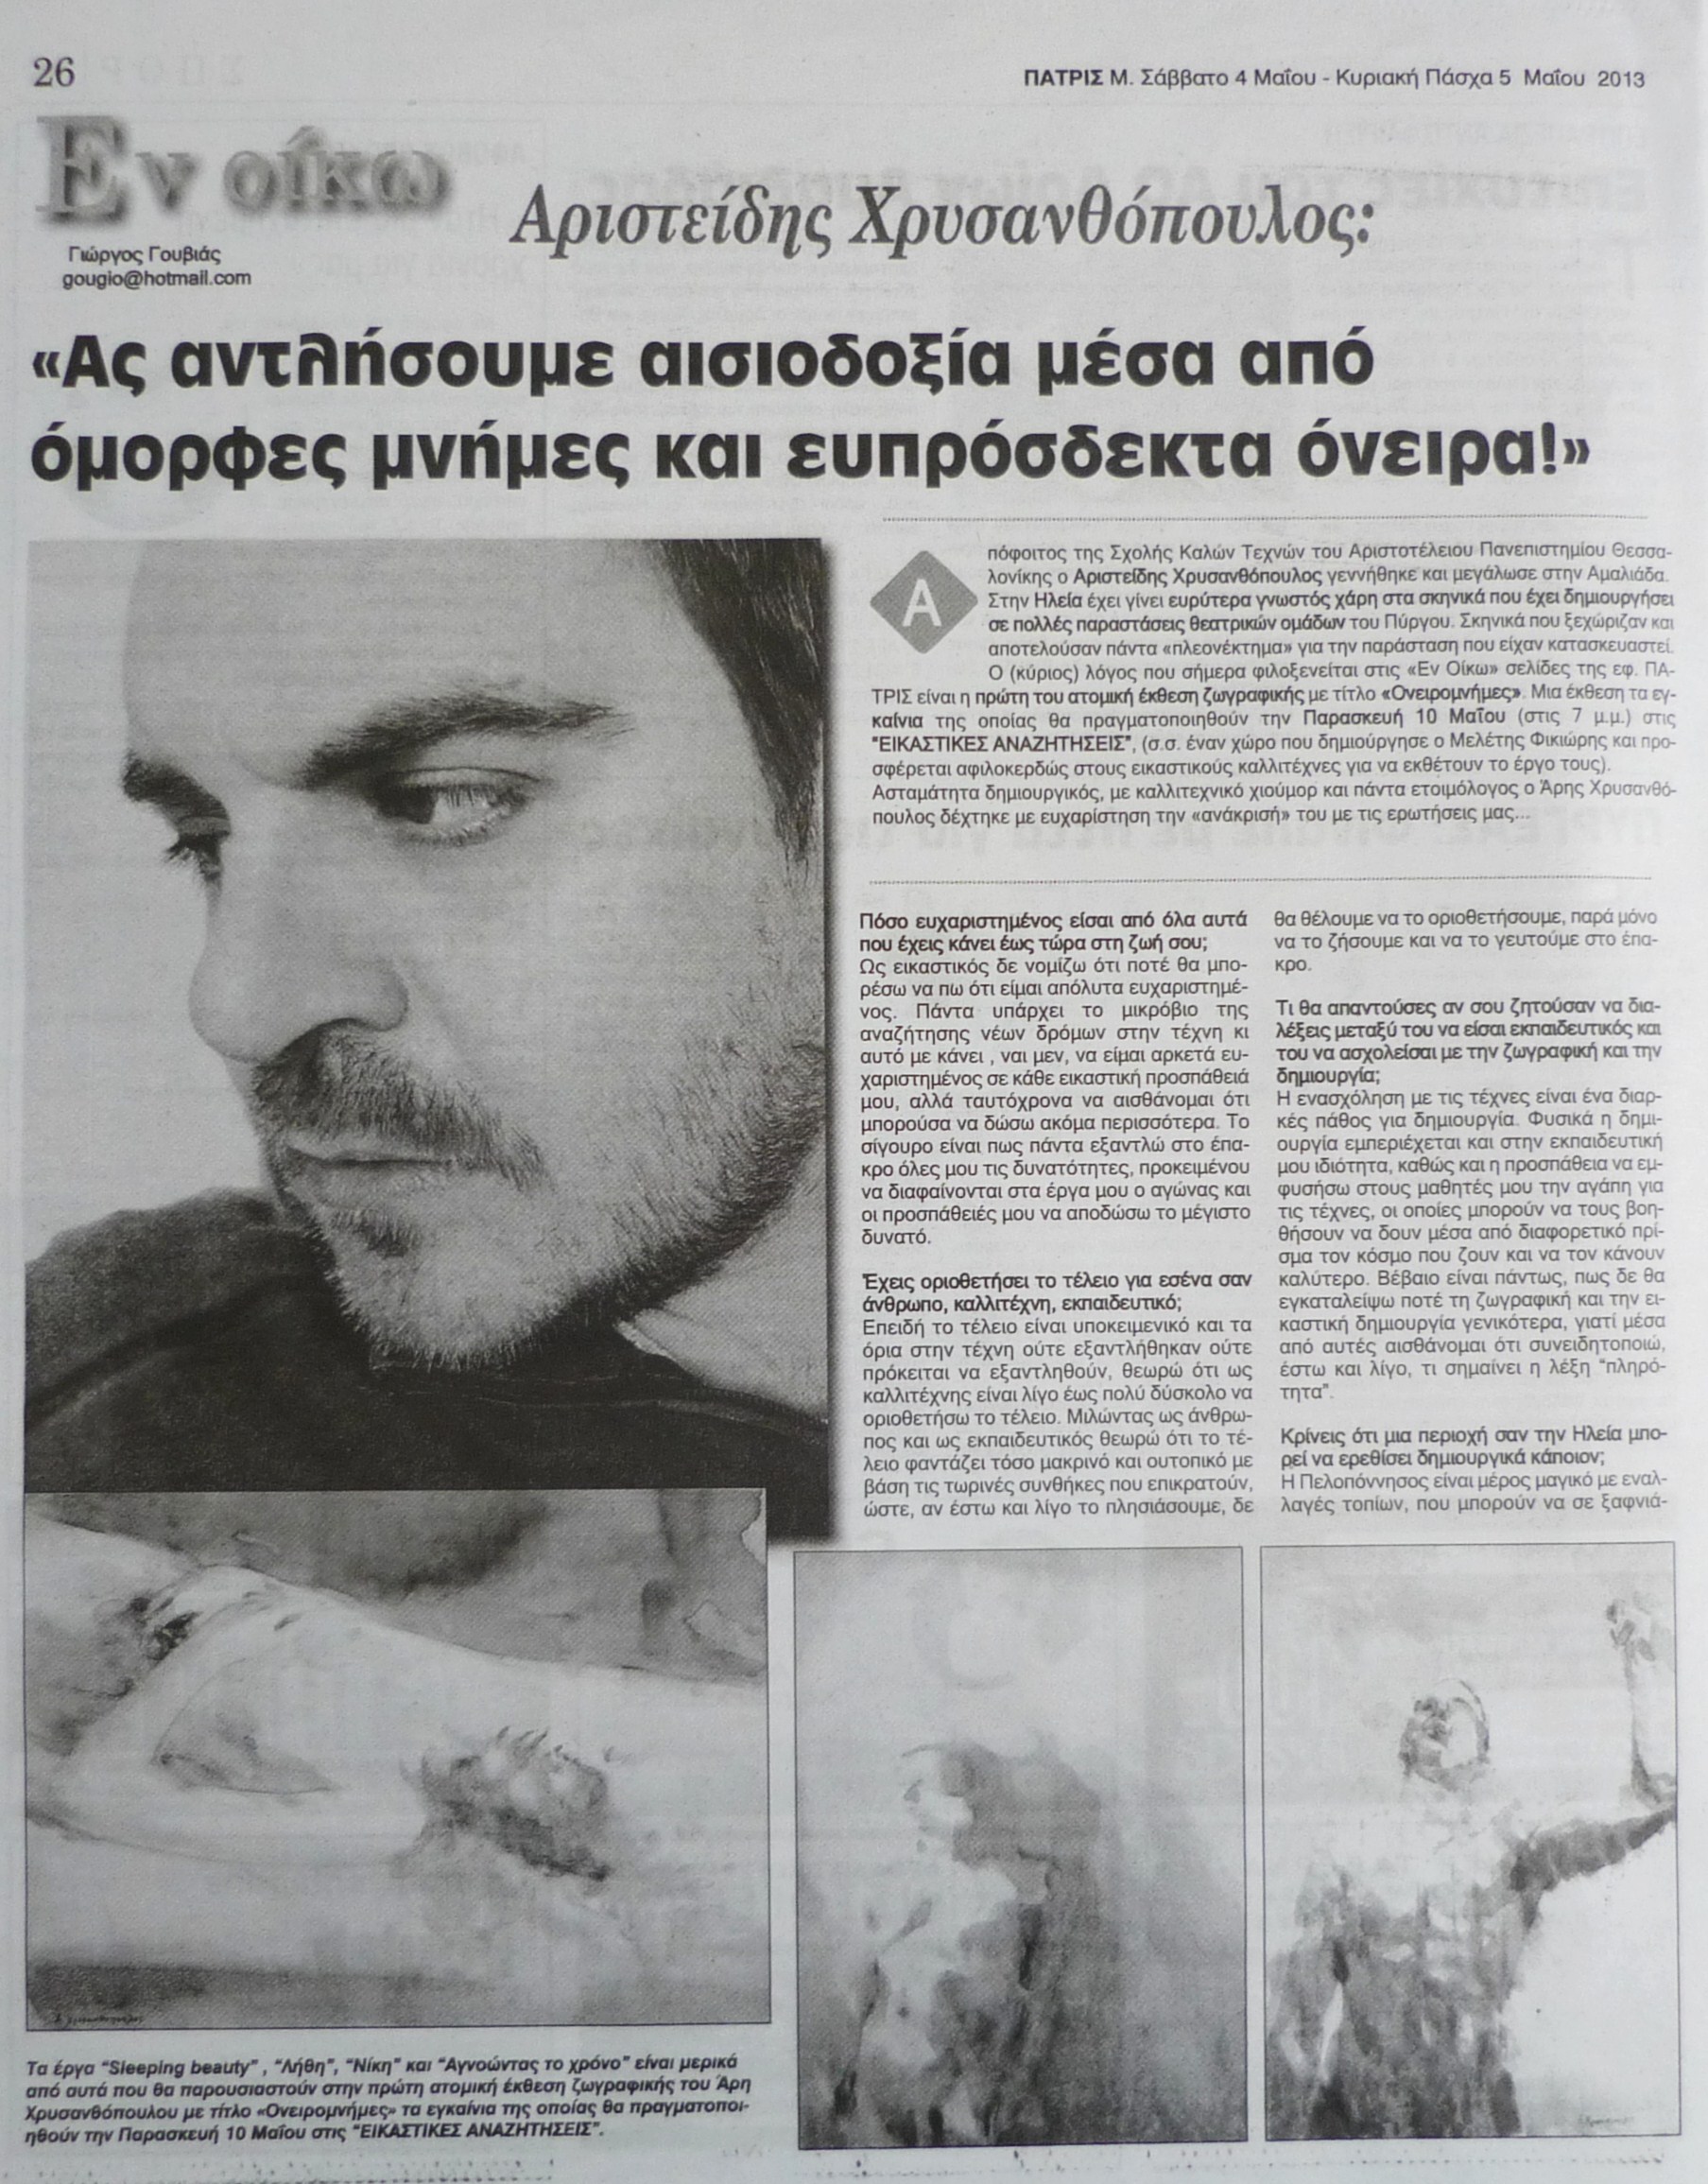 Εφημερίδα ΠΑΤΡΙΣ, 04-05-2013 (1)